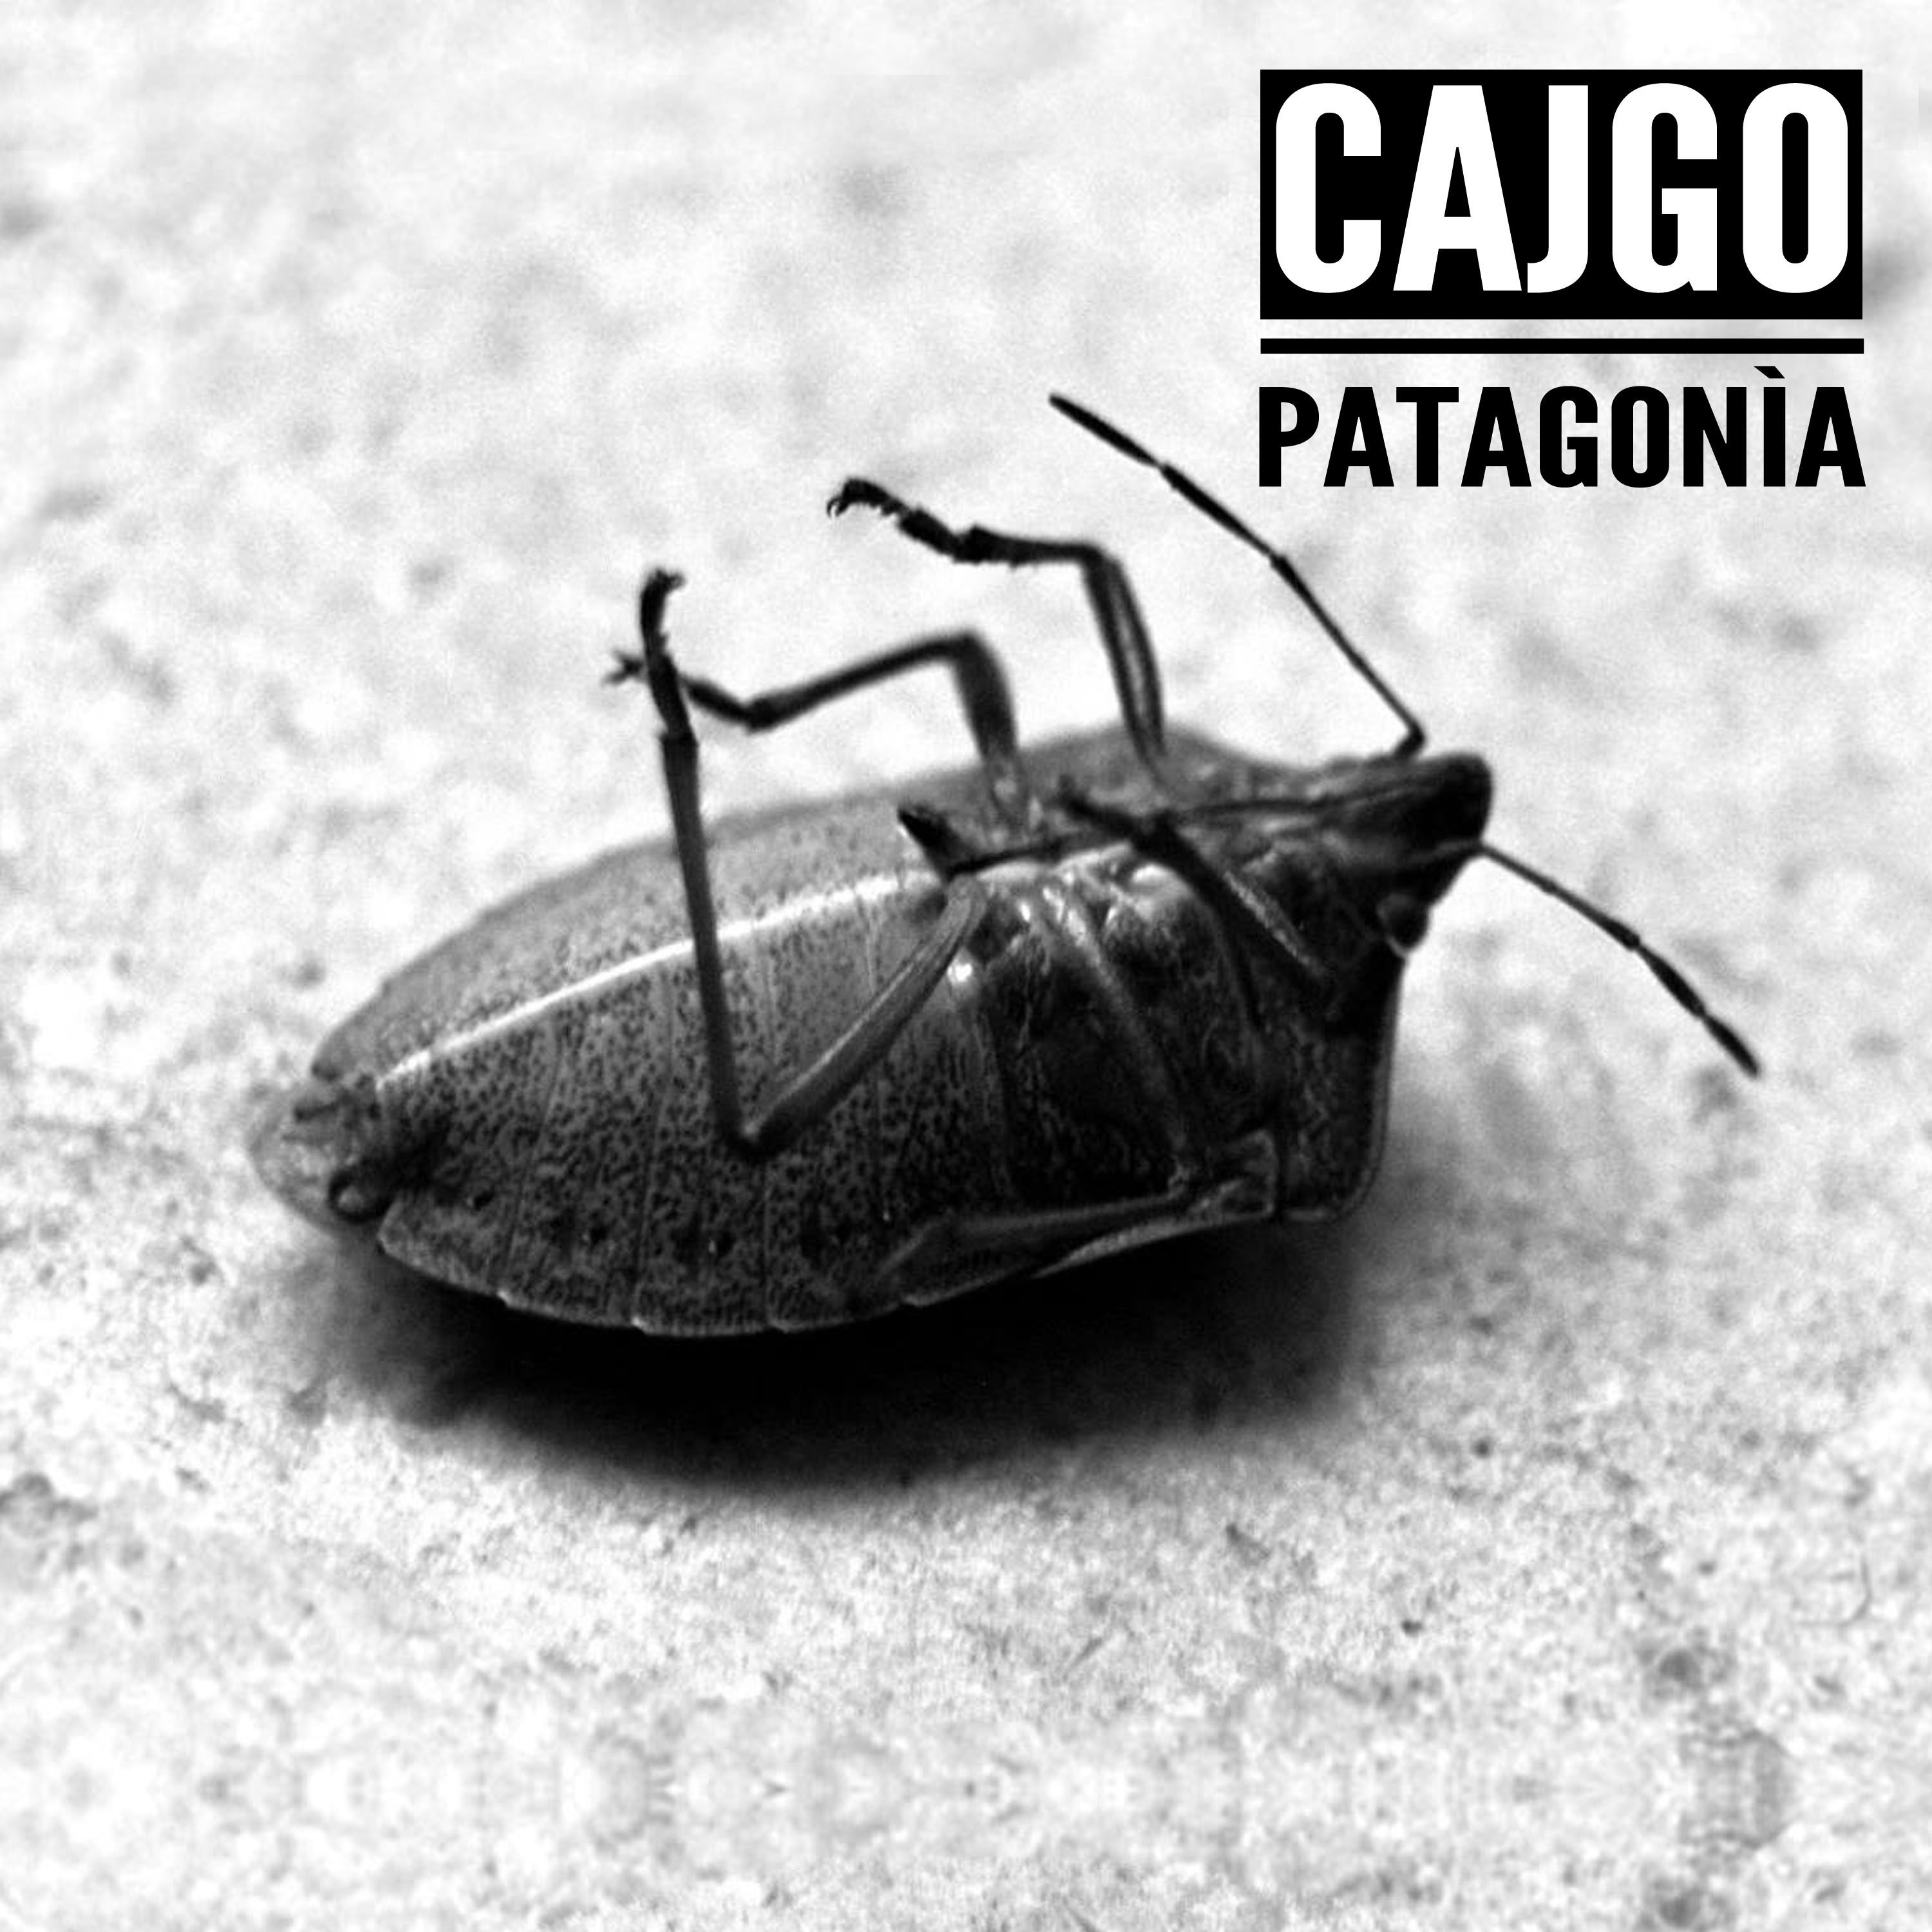 Patagonia - Nuovo album per i CAJGO